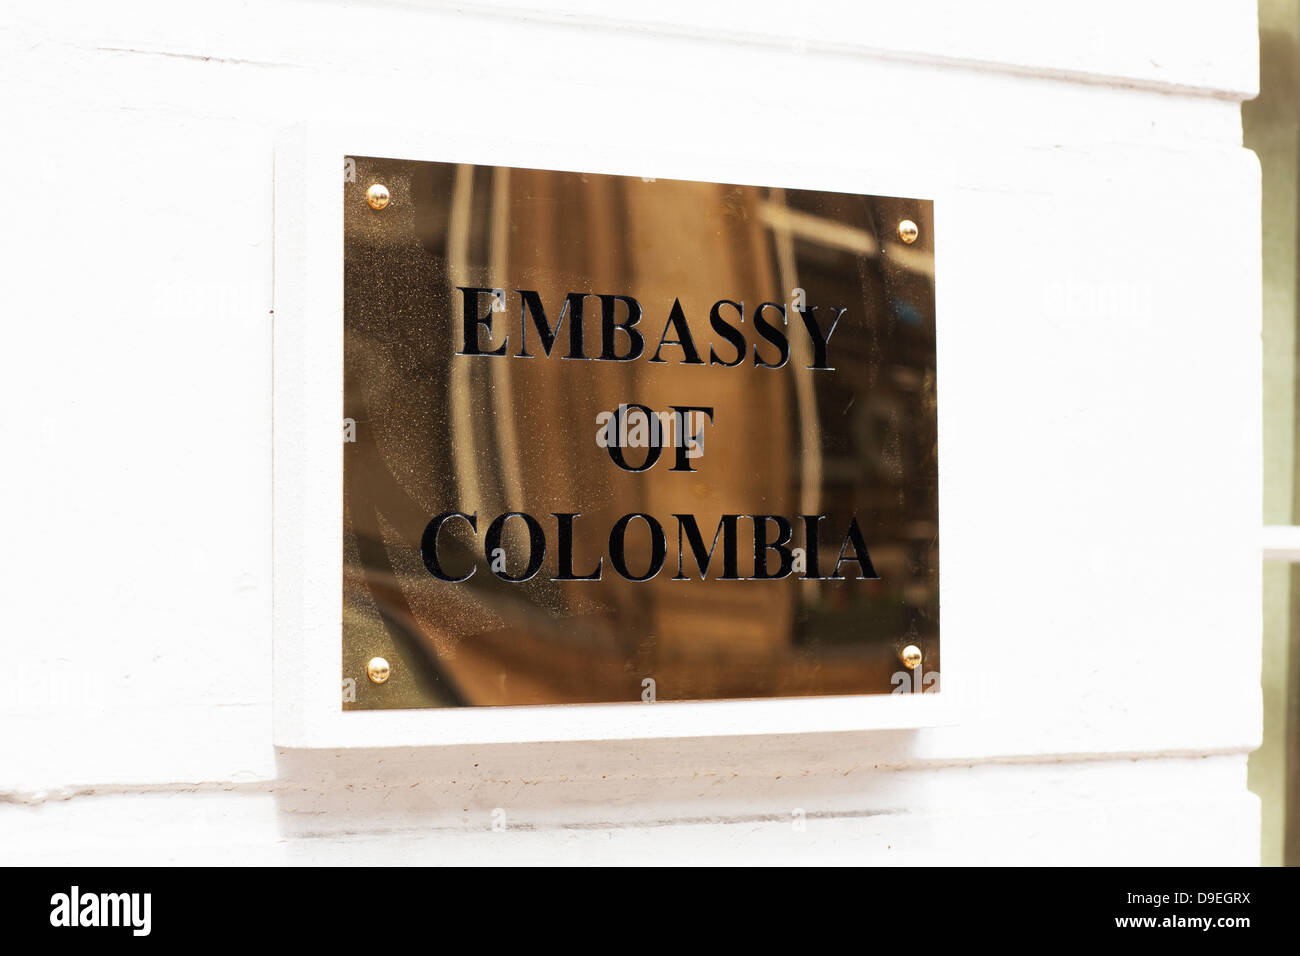 Ambassade de Colombie Britannique - signalisation Banque D'Images